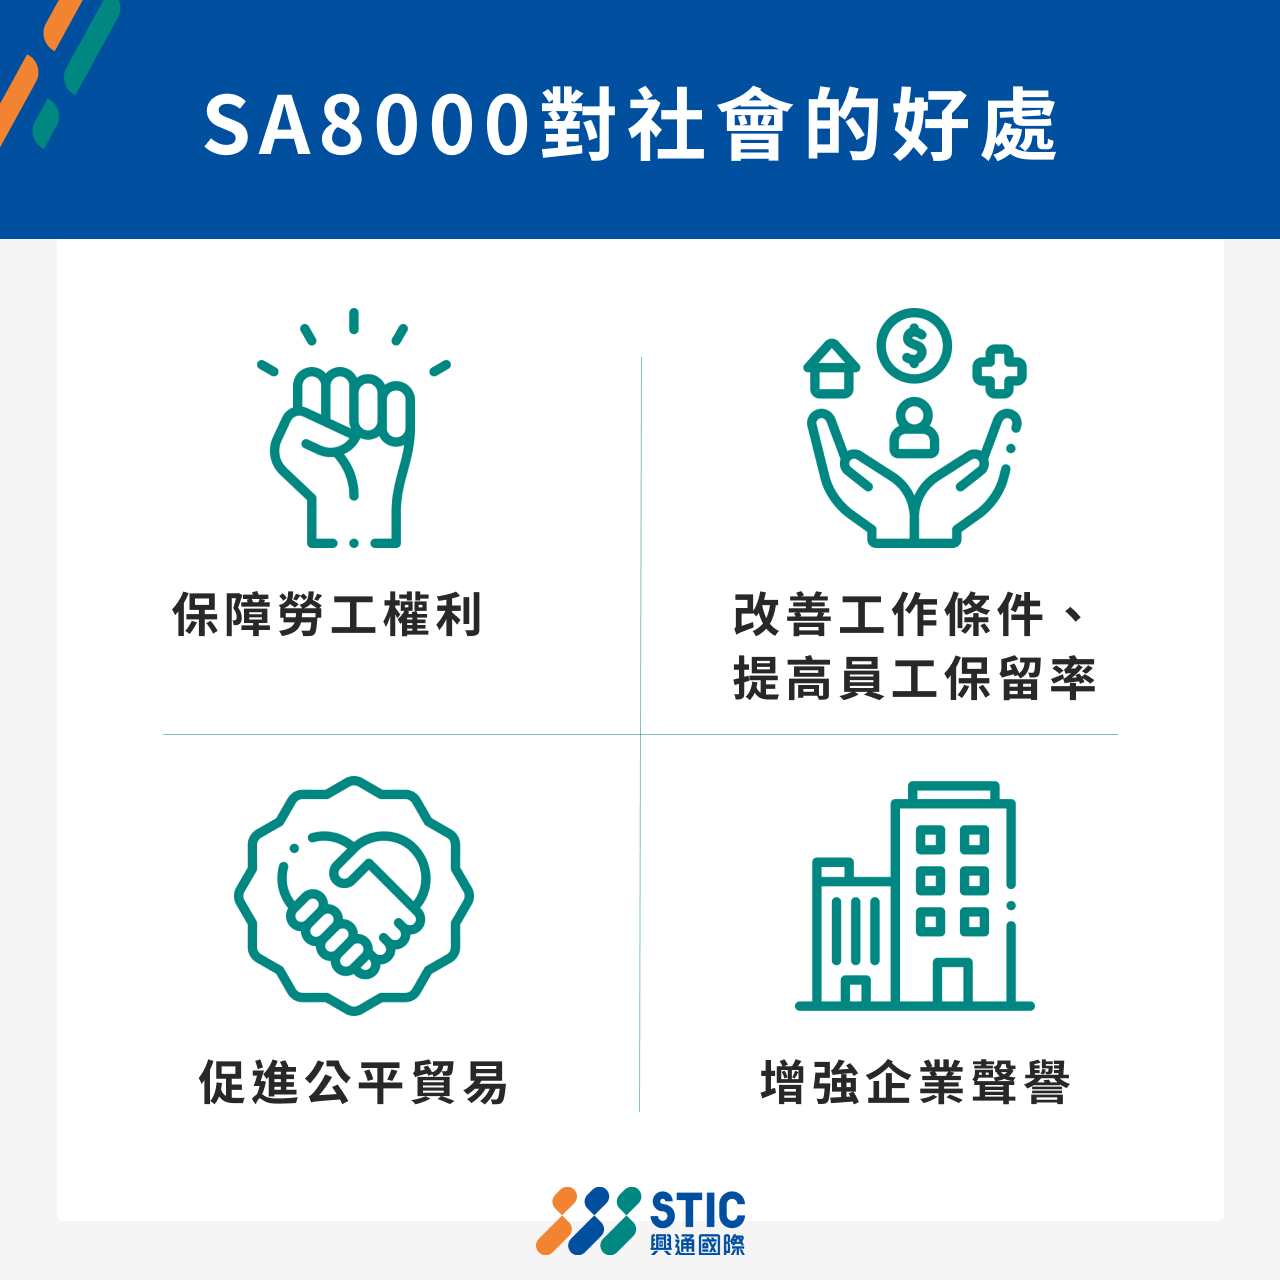 SA8000對社會的好處